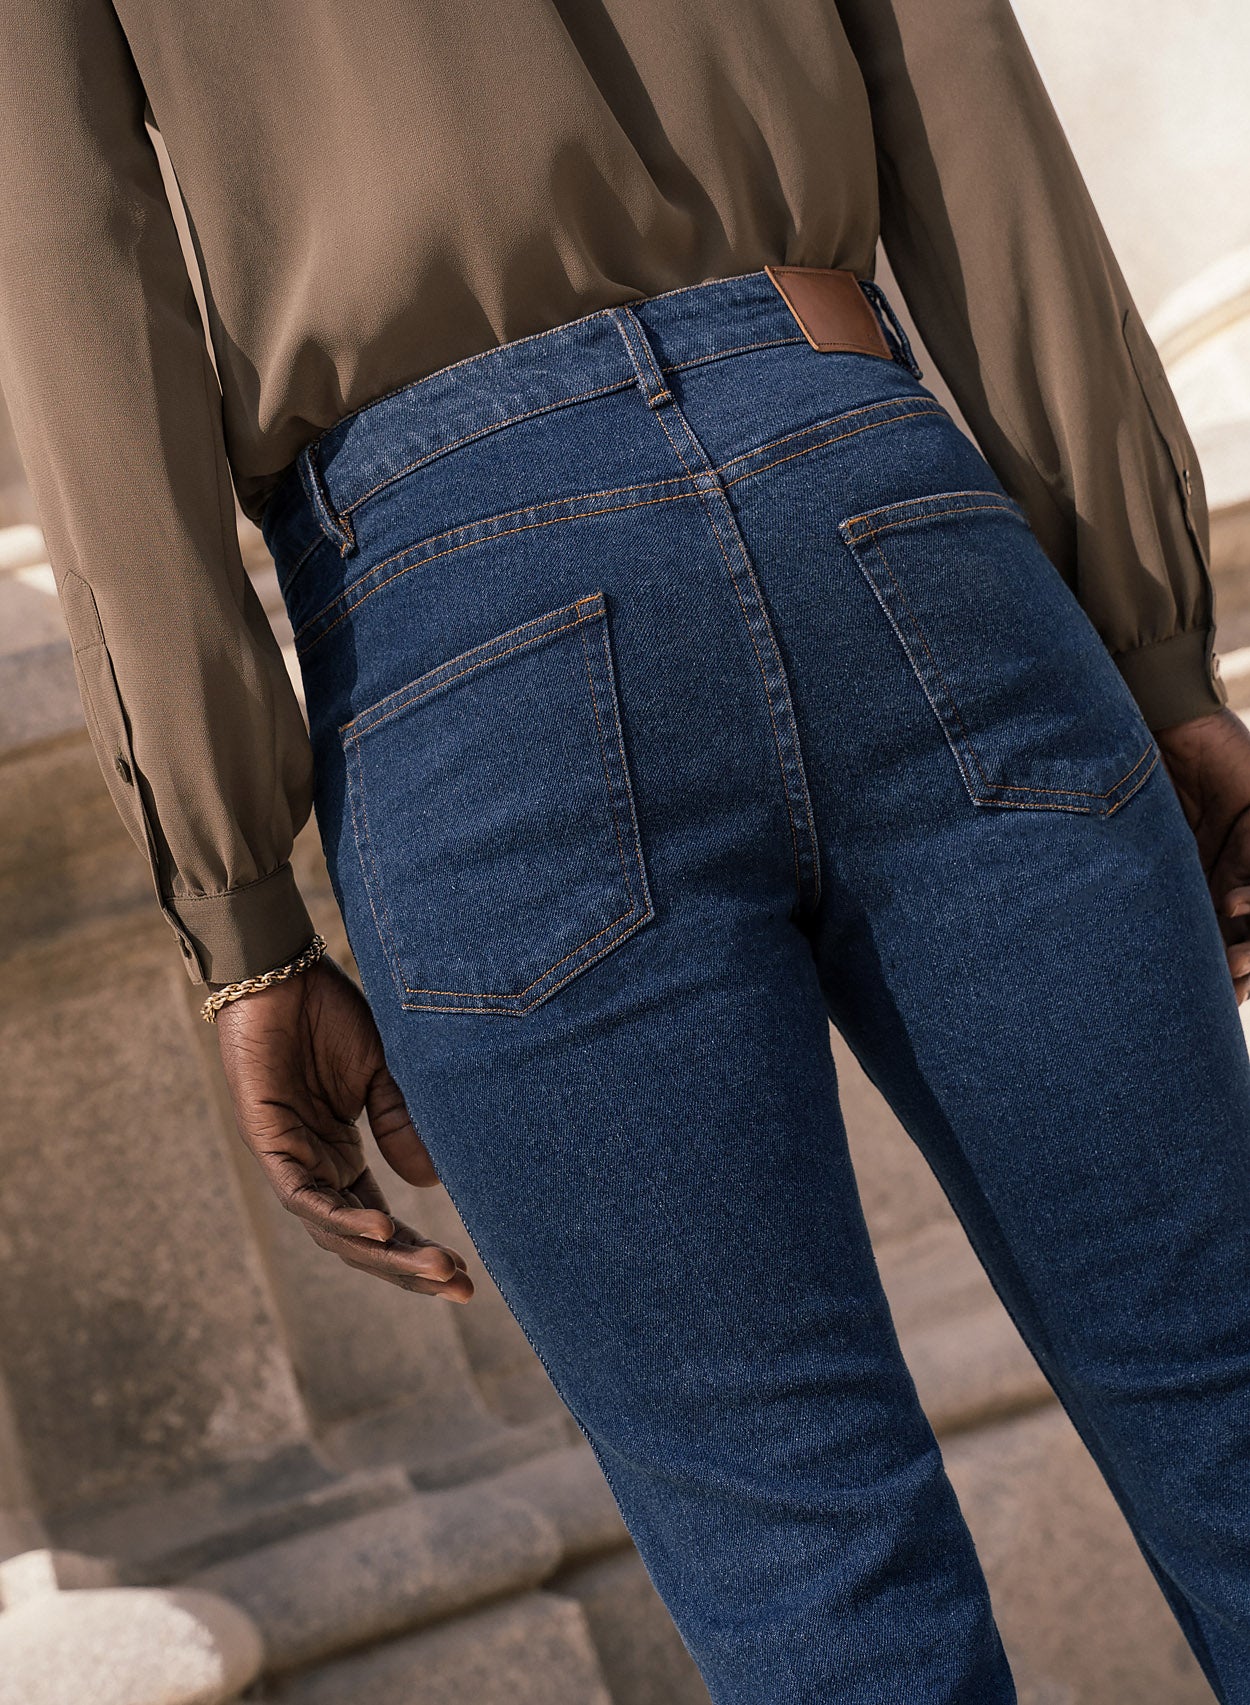 Vintage Fade Denim Flare Front Pocket Jeans